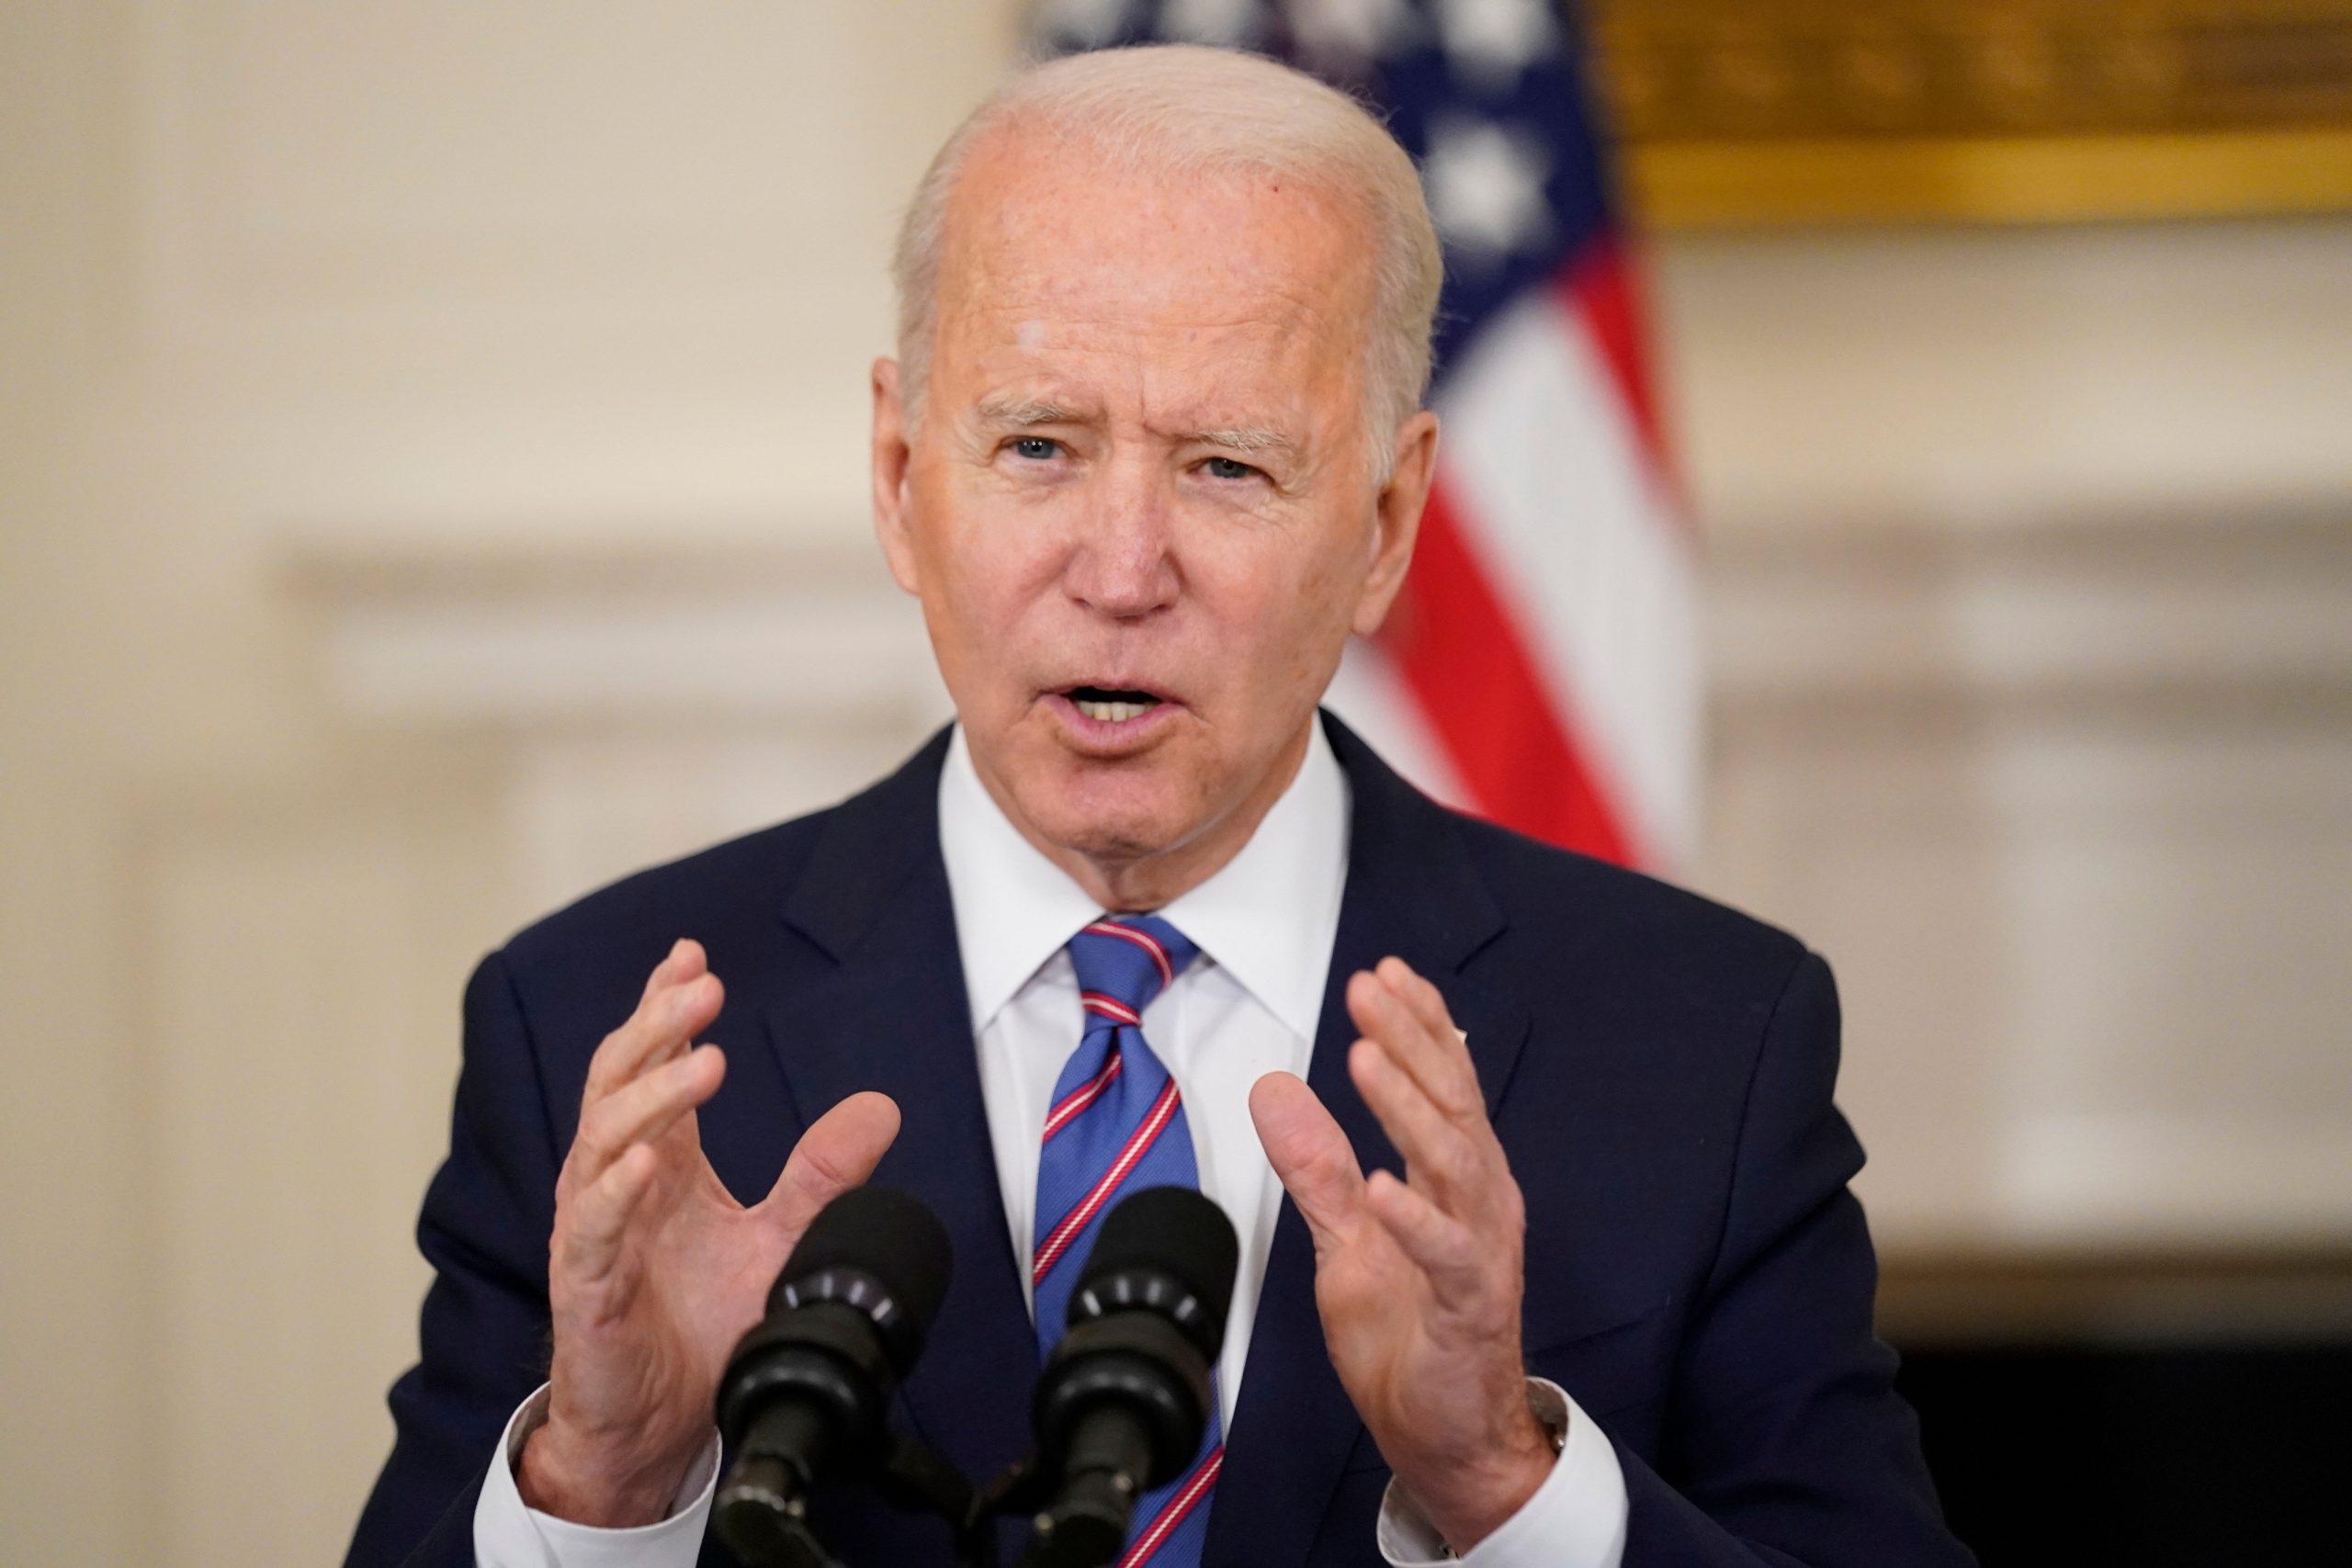 Joe Biden dubs US gun violence an ‘epidemic’, calls for ban on private ‘assault weapons’